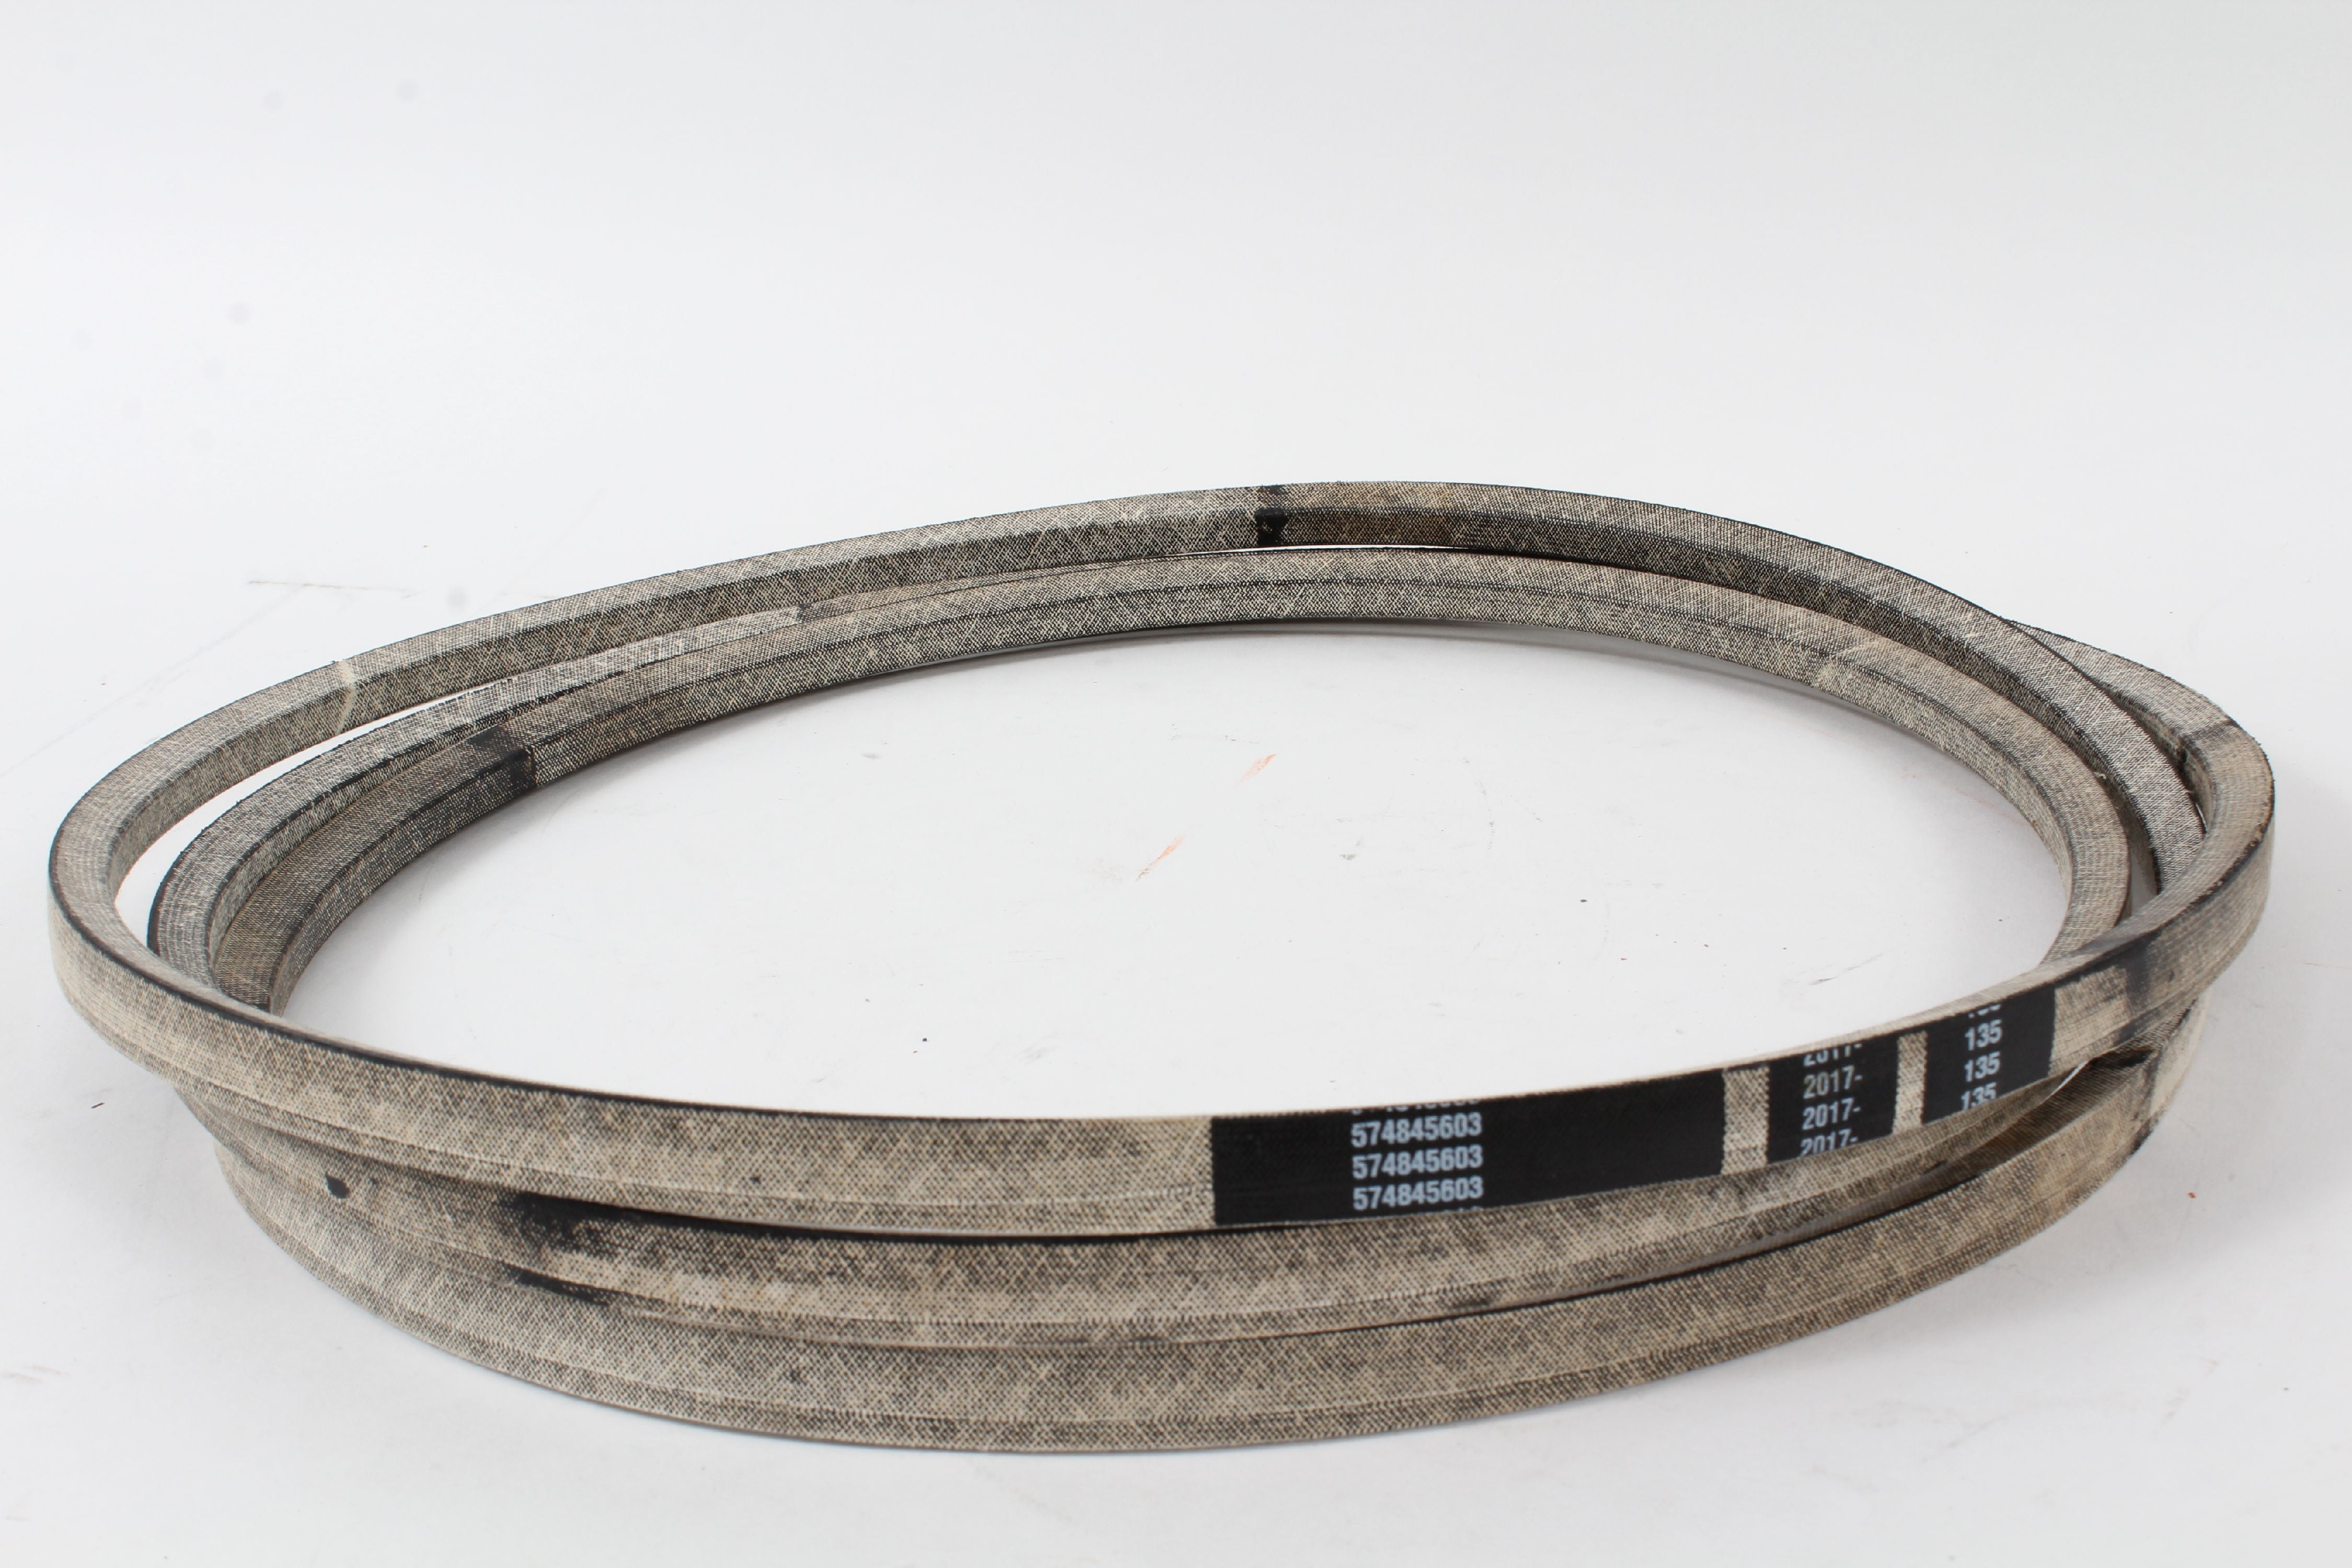 Caltric Deck Belt For Husqvarna Craftsman 574845603 Belt